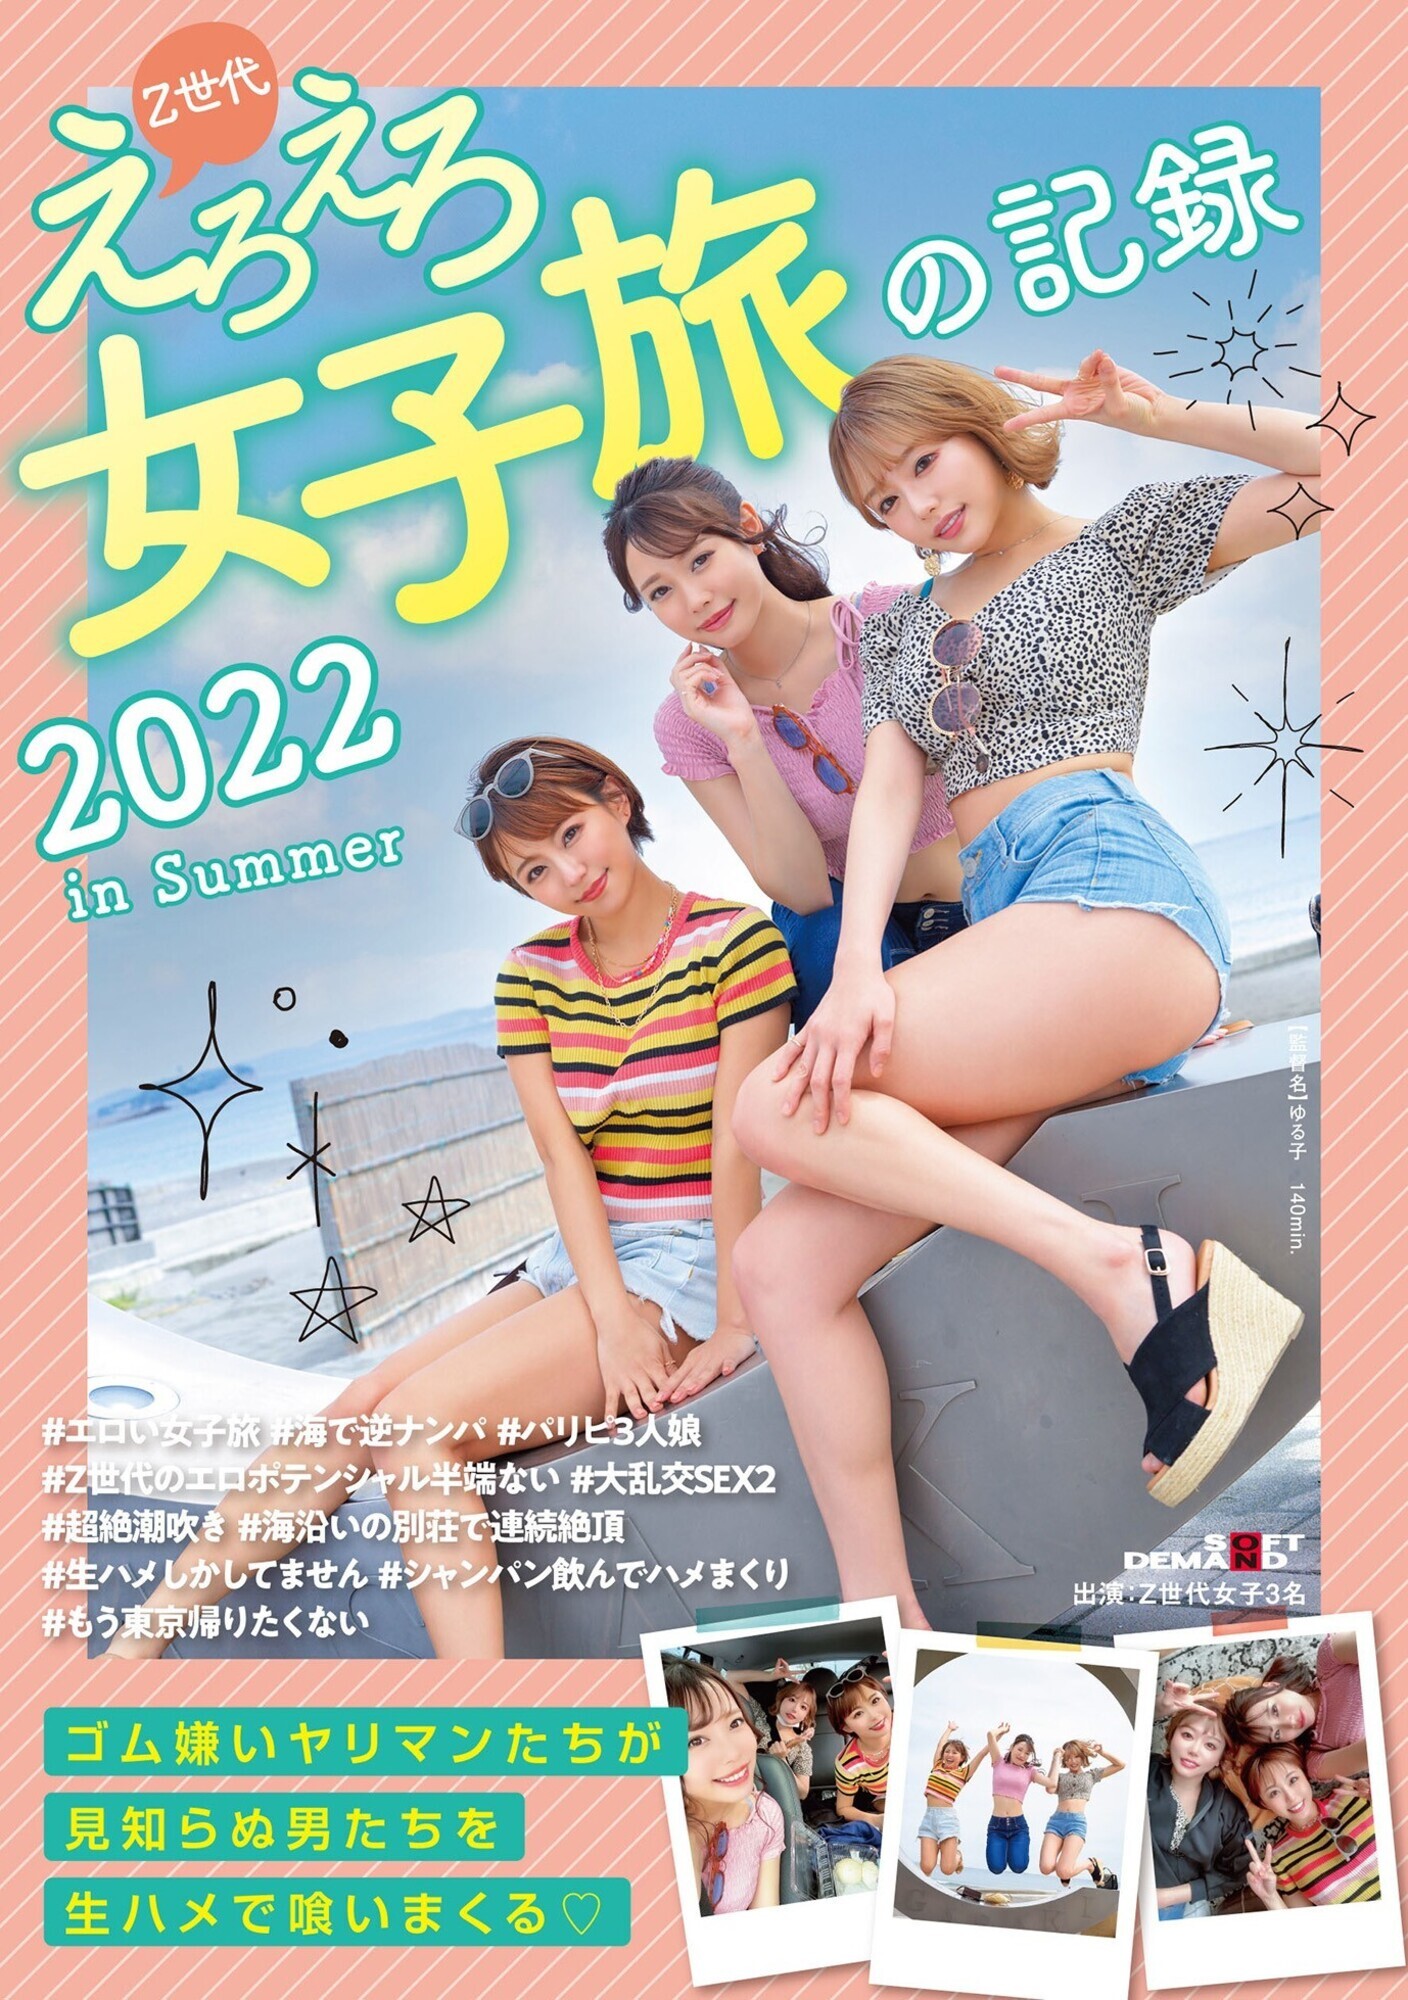 ★【痴女】Z世代えろえろ女子旅の記録 2022 in Summer